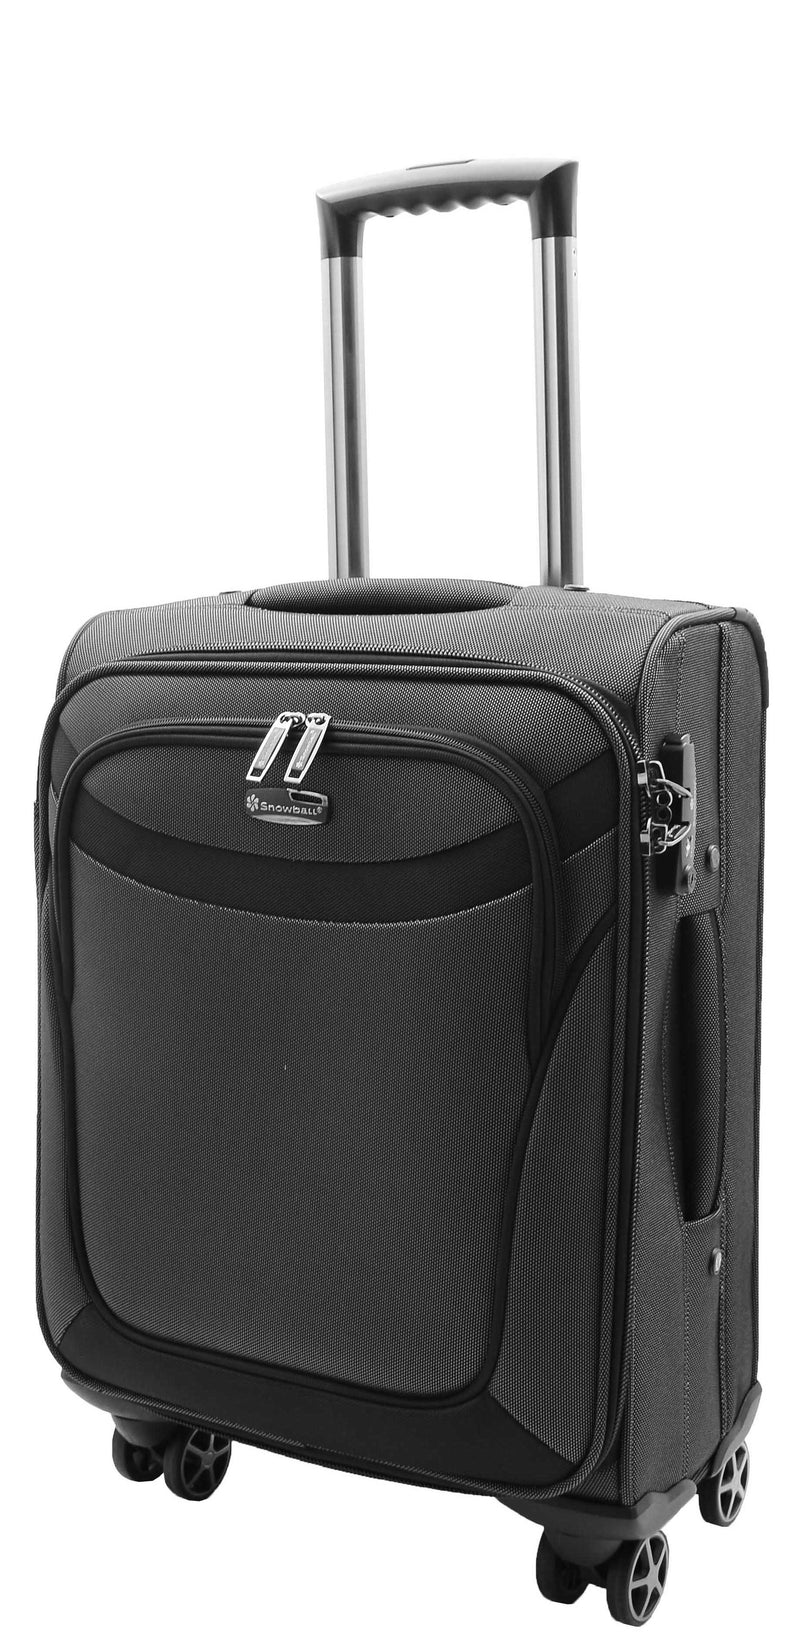 Four Wheel Suitcase Luggage Soft Casing TSA Lock Neptune Black 8